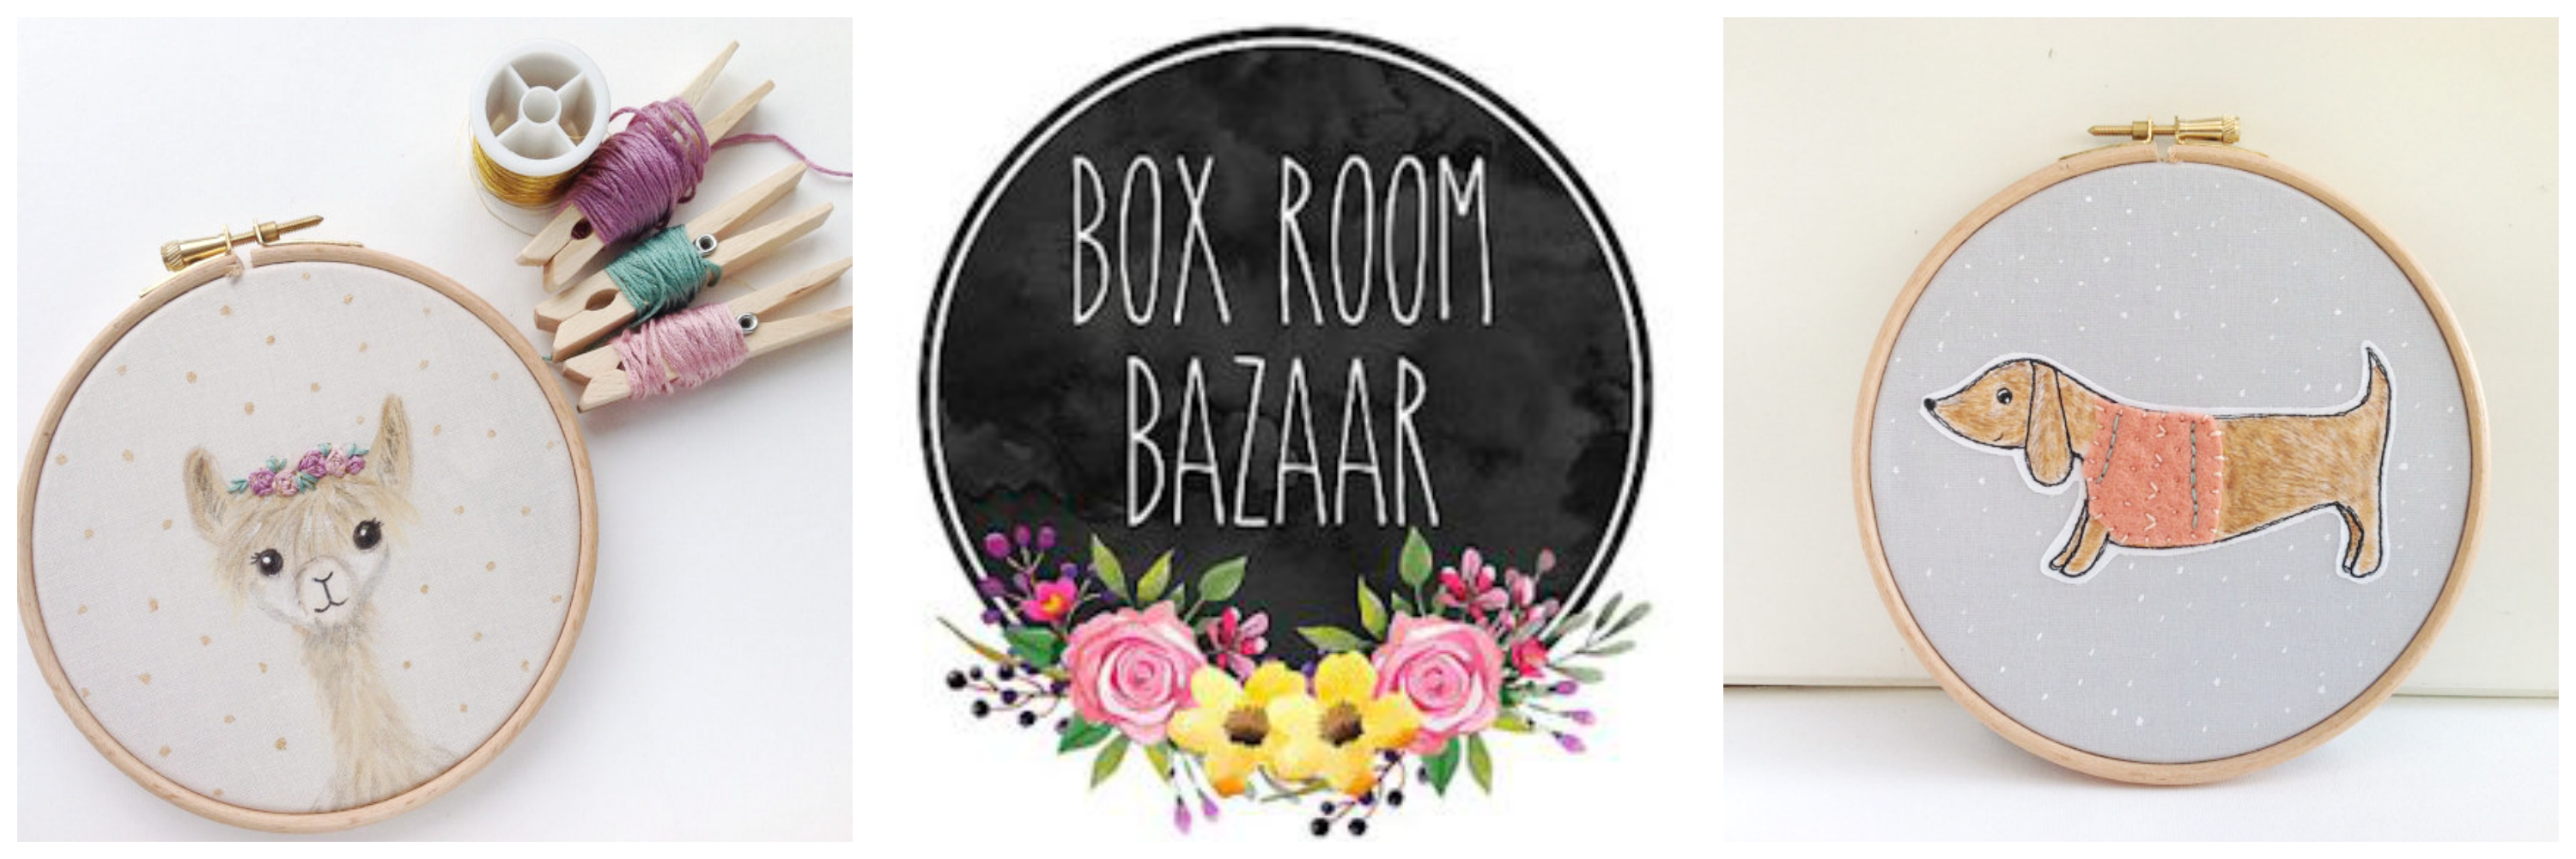 Box Room Bazaar